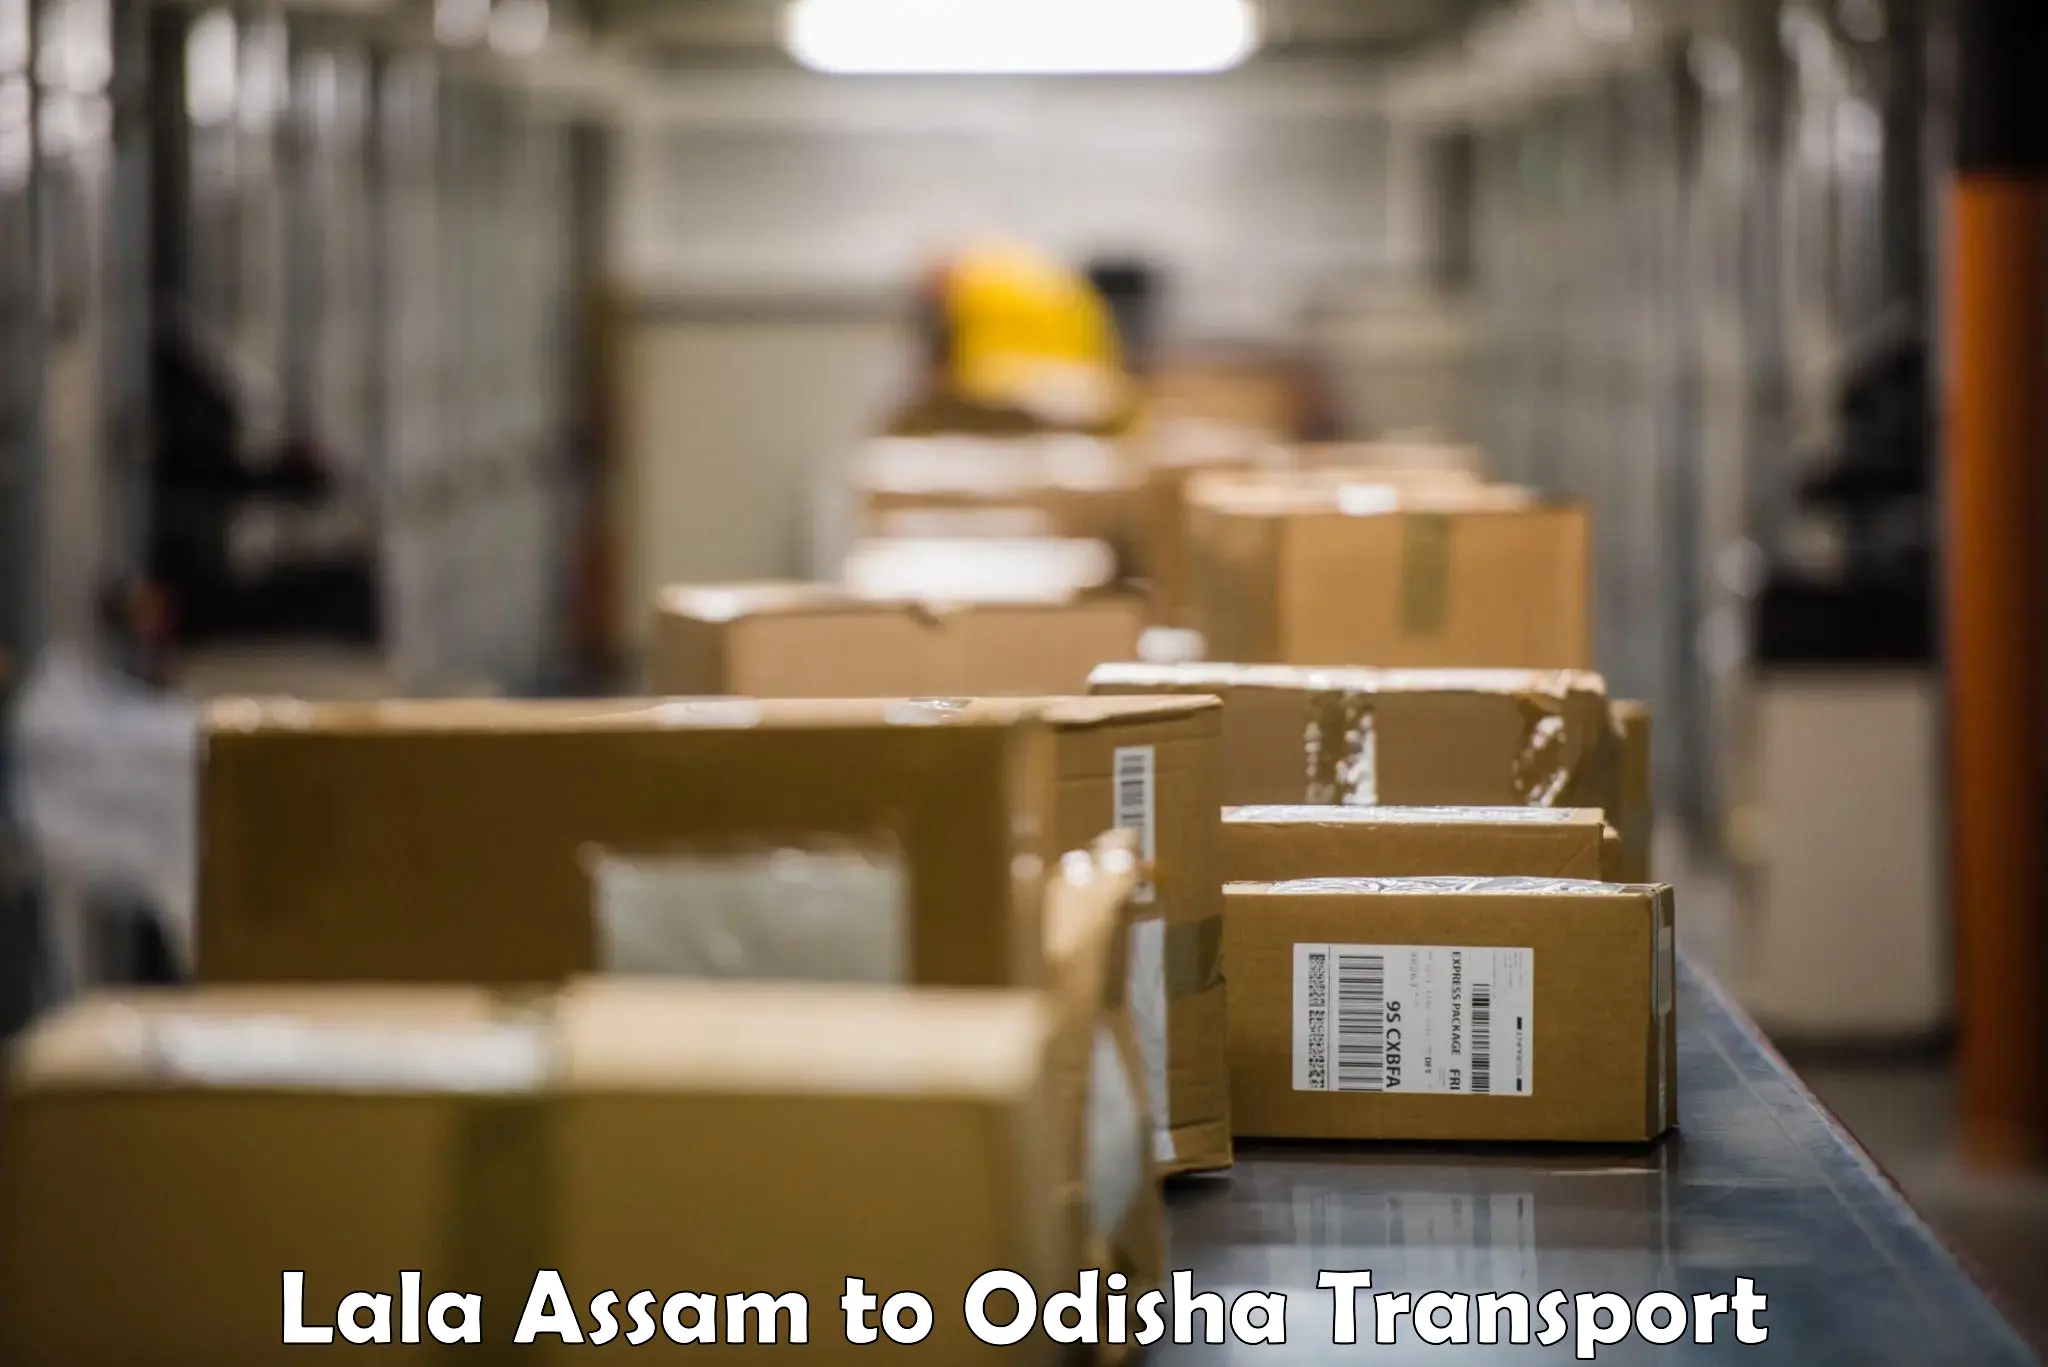 Nearest transport service Lala Assam to Koraput